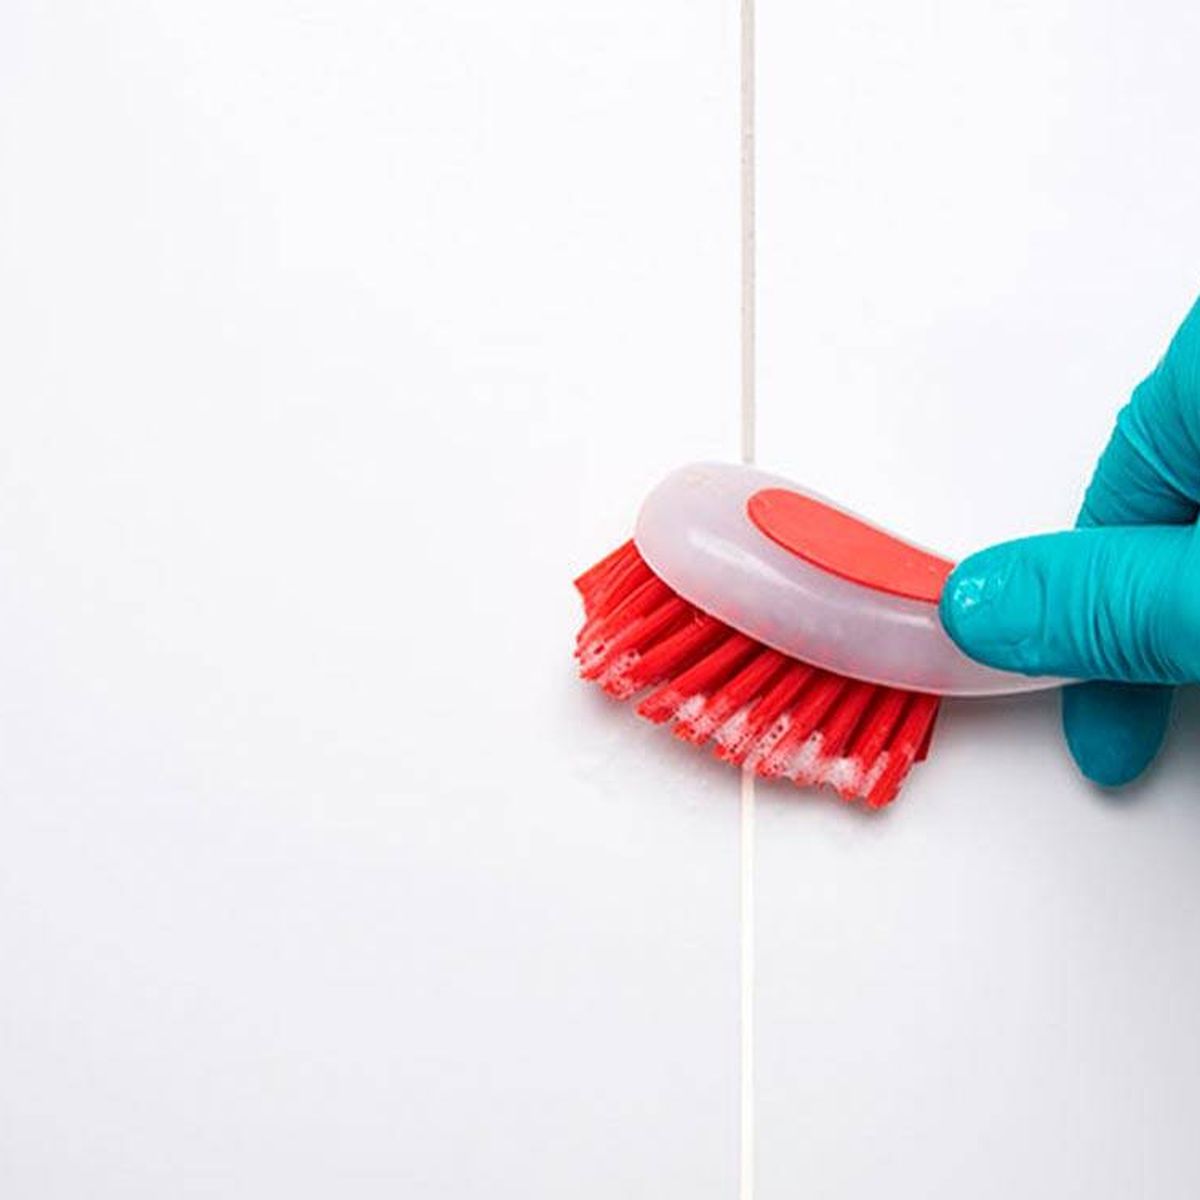 Cómo limpiar las juntas del suelo? – Las mejores soluciones en limpieza